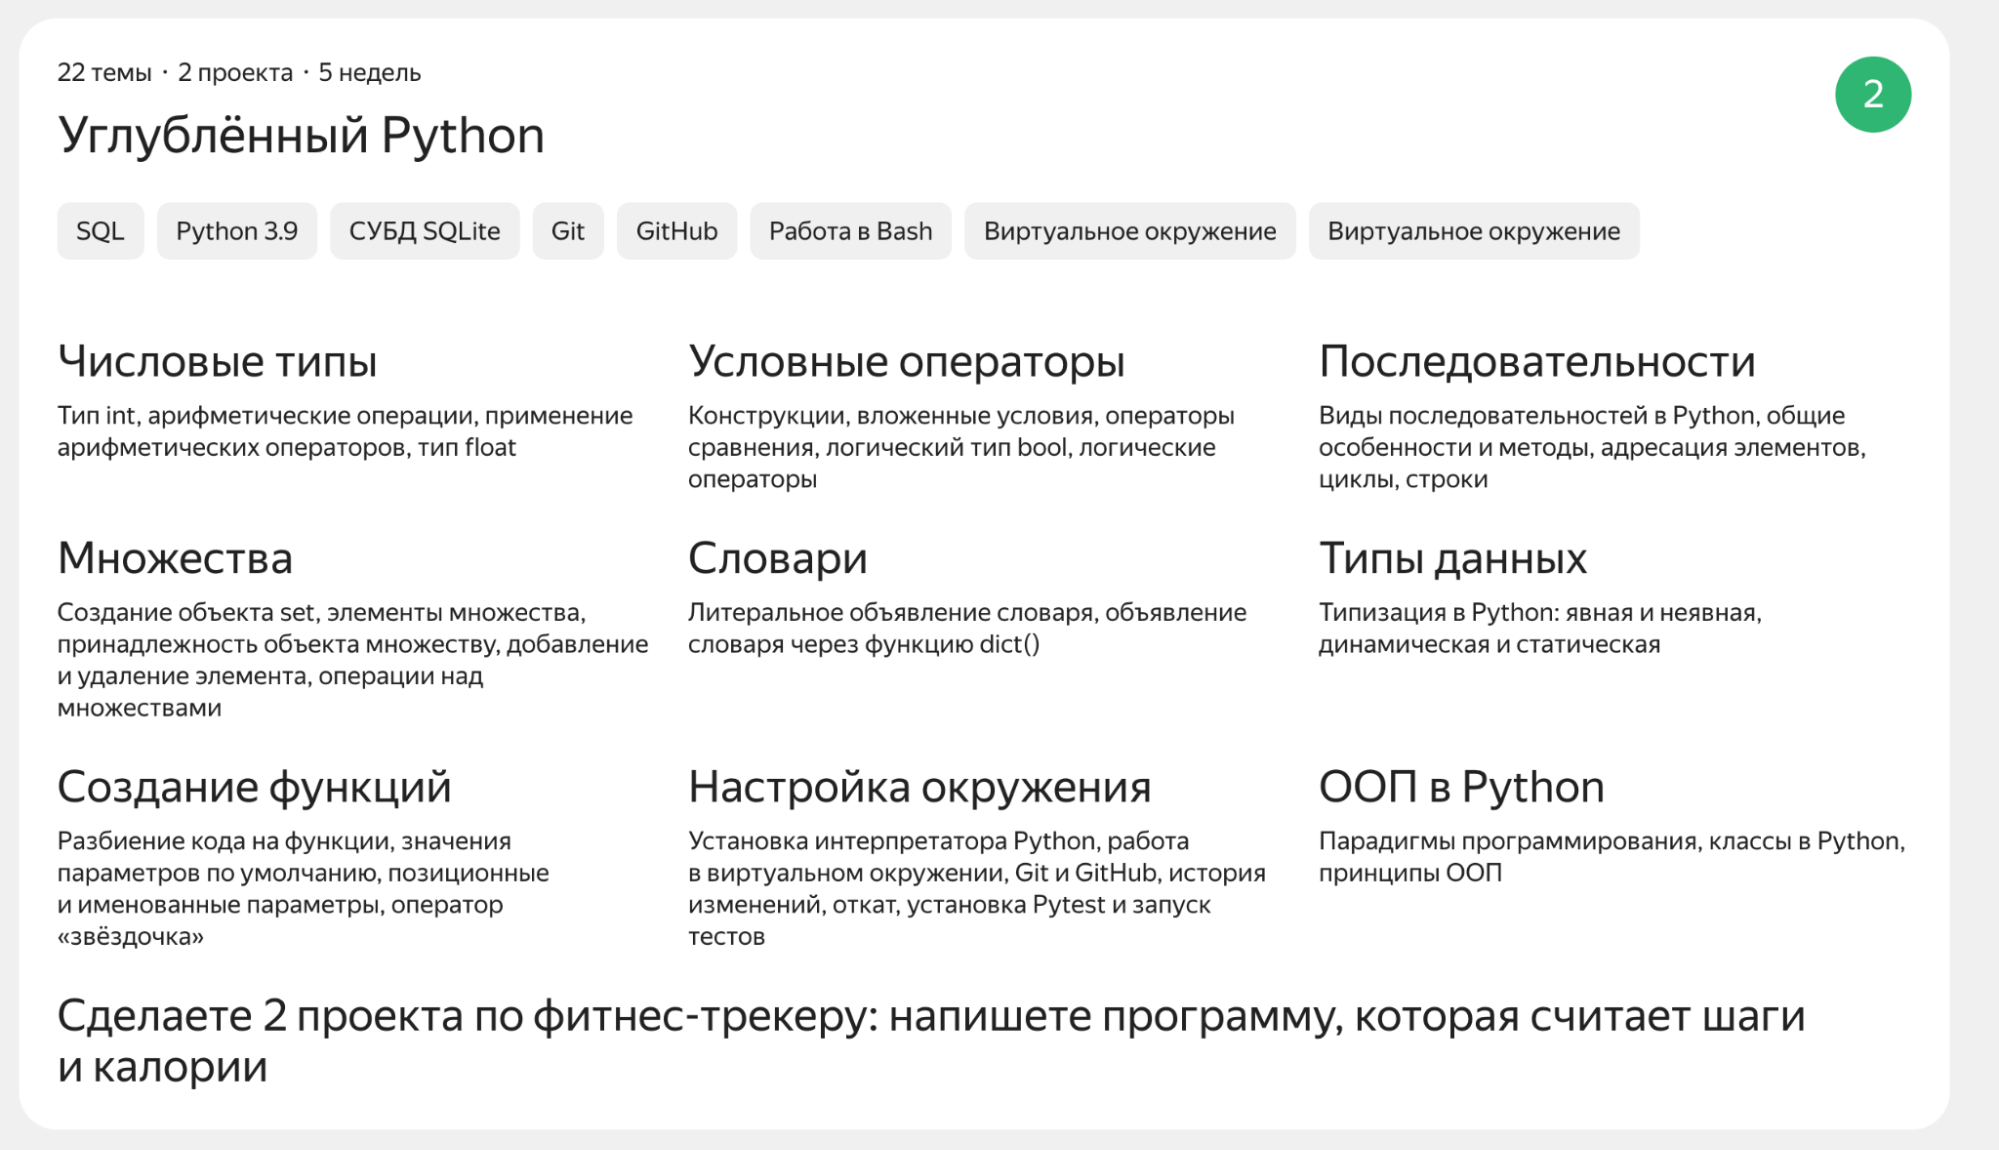 Воруй у Яндекса: хороший стильный расхлоп на странице